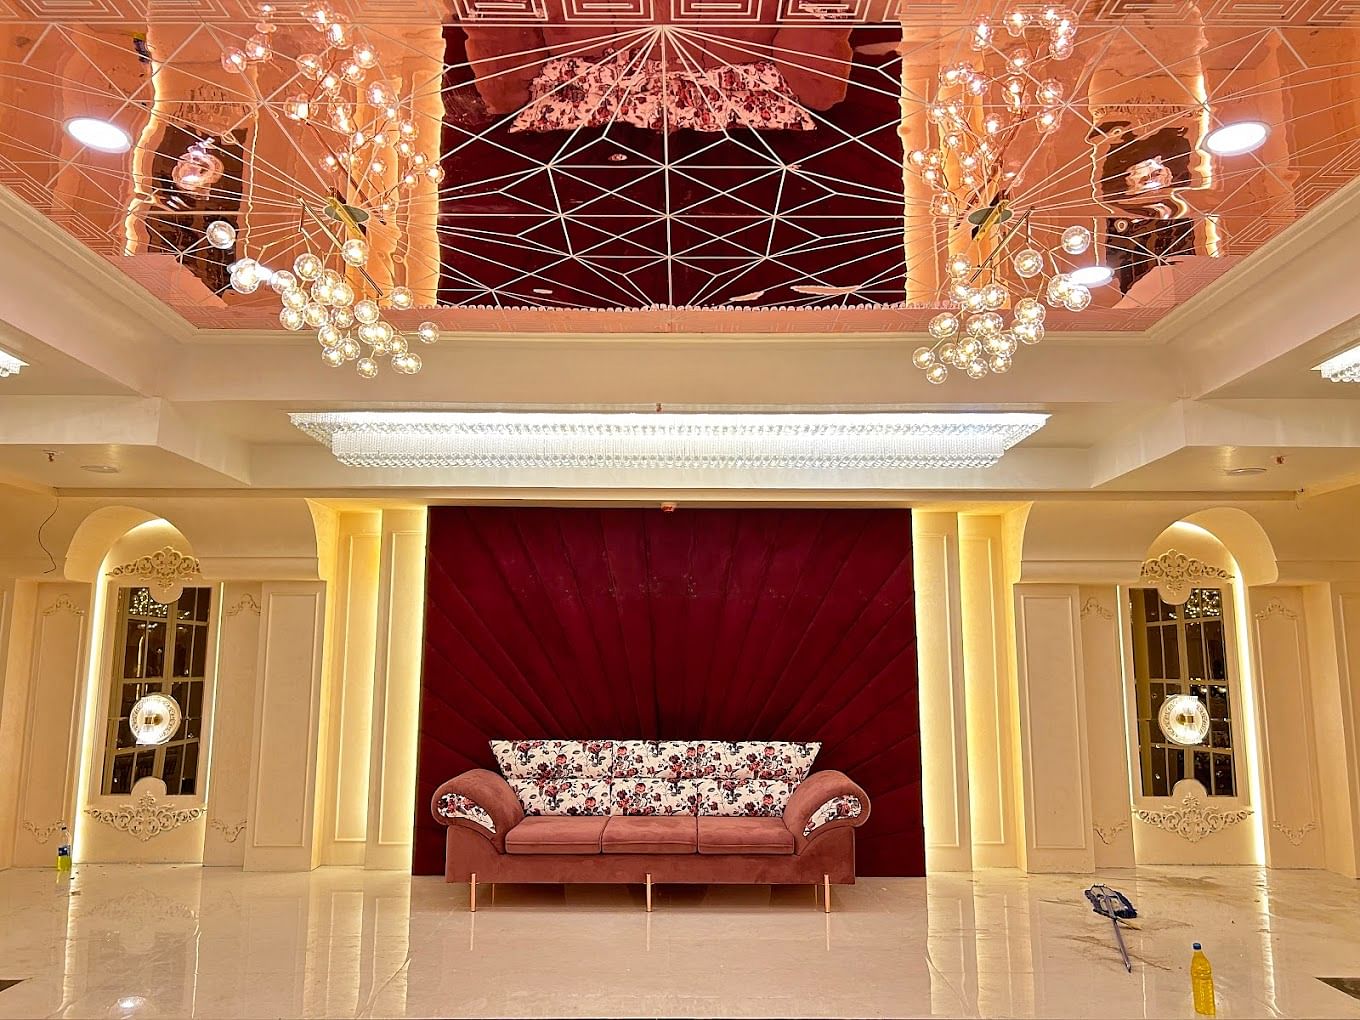 The Florence Resort in Jhotwara, Jaipur